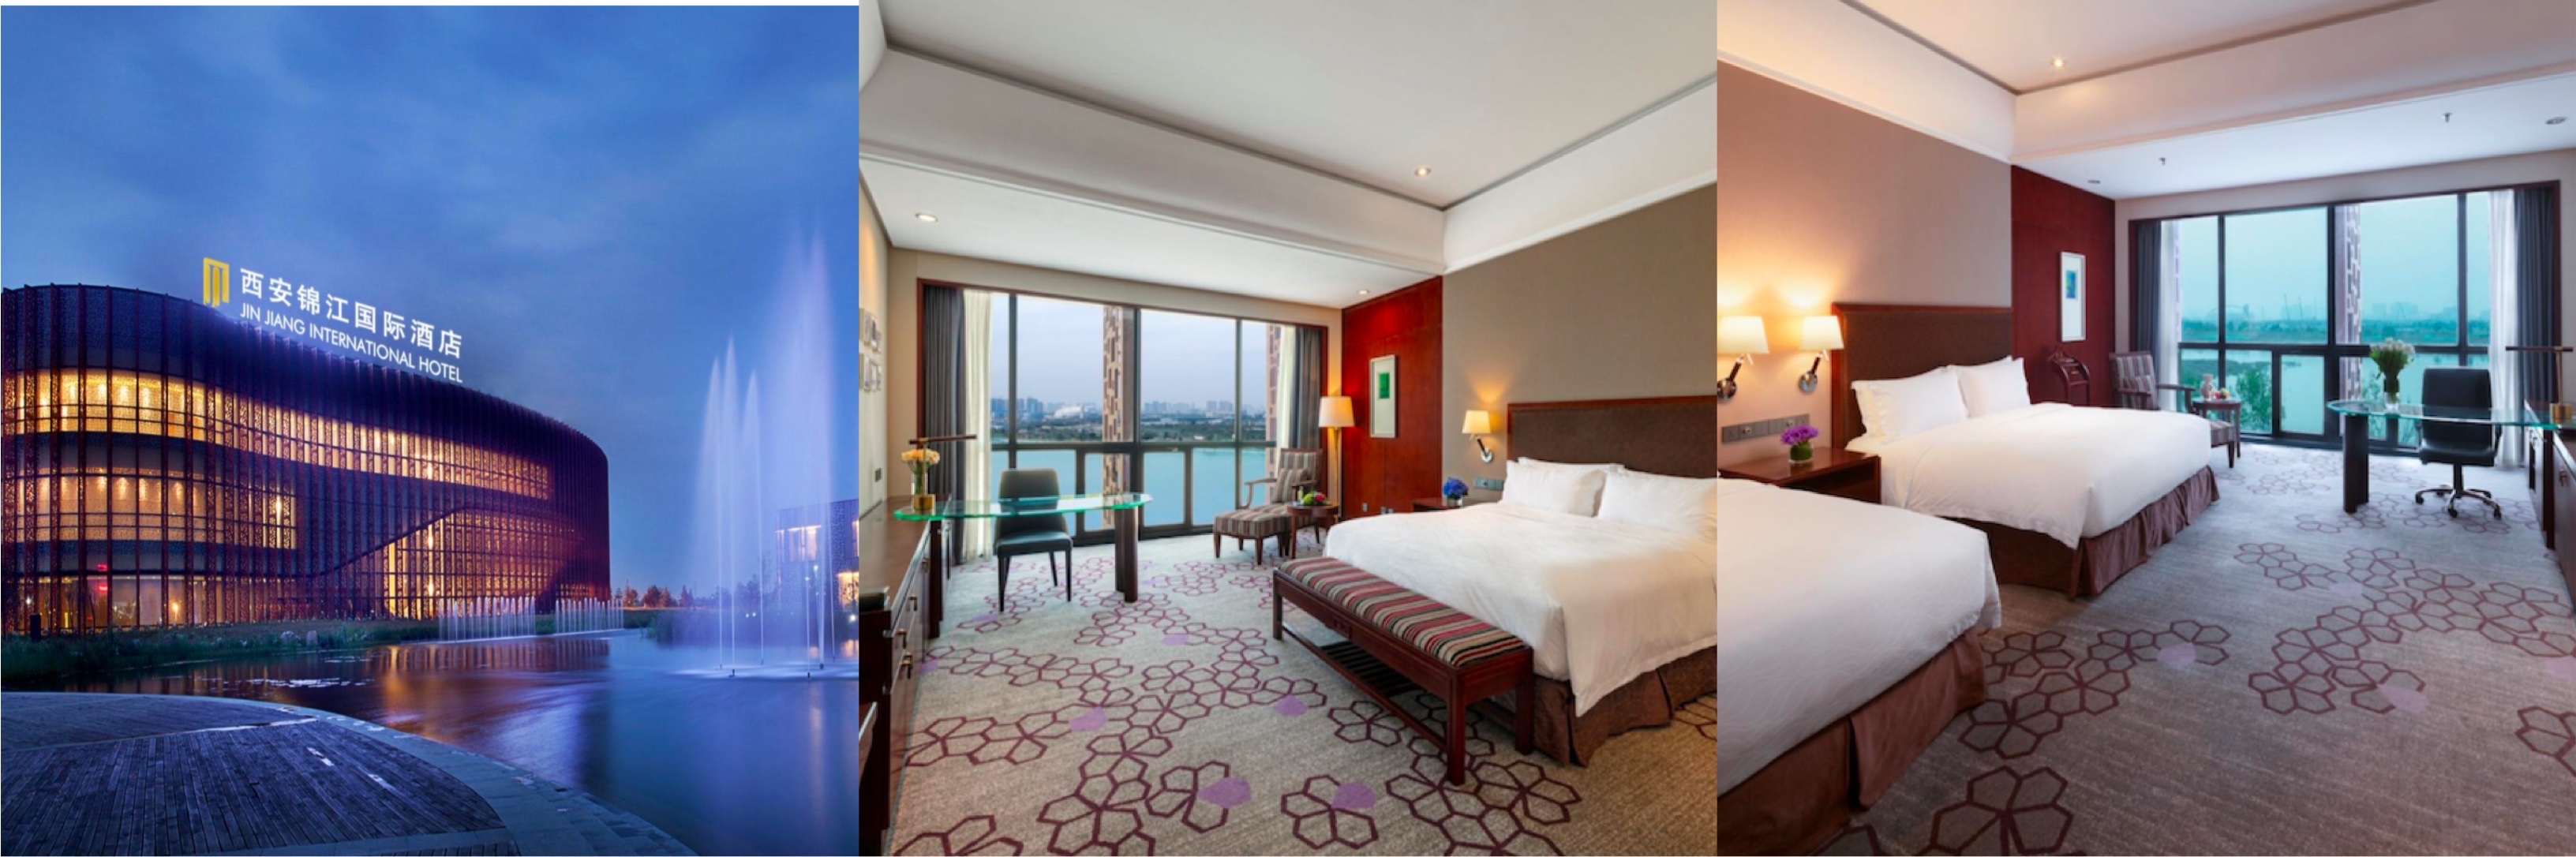 Jin Jiang International Hotel Xi’an